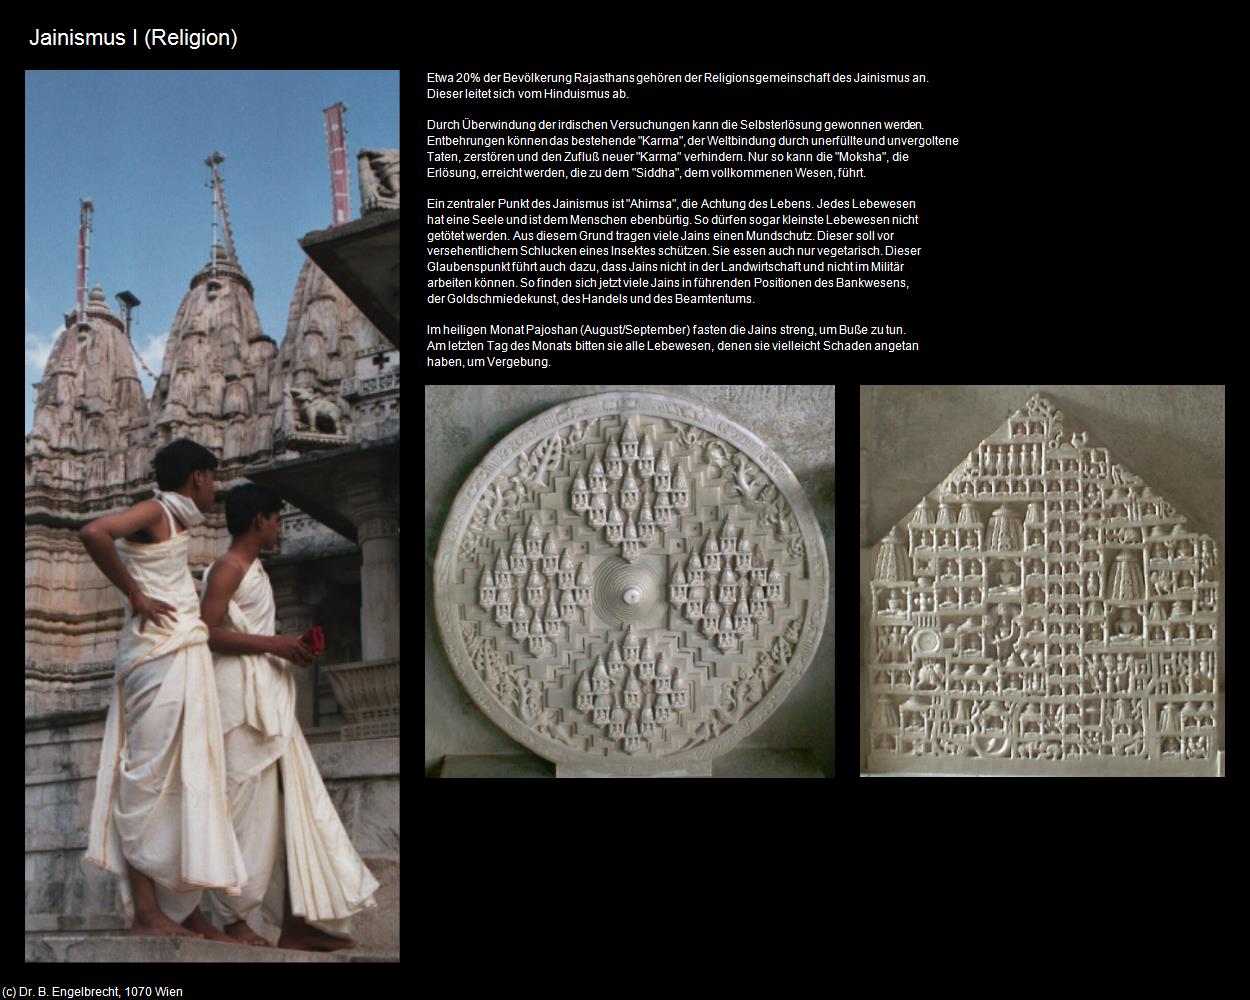 Jainismus I (Indien-Religion) in Rajasthan - das Land der Könige